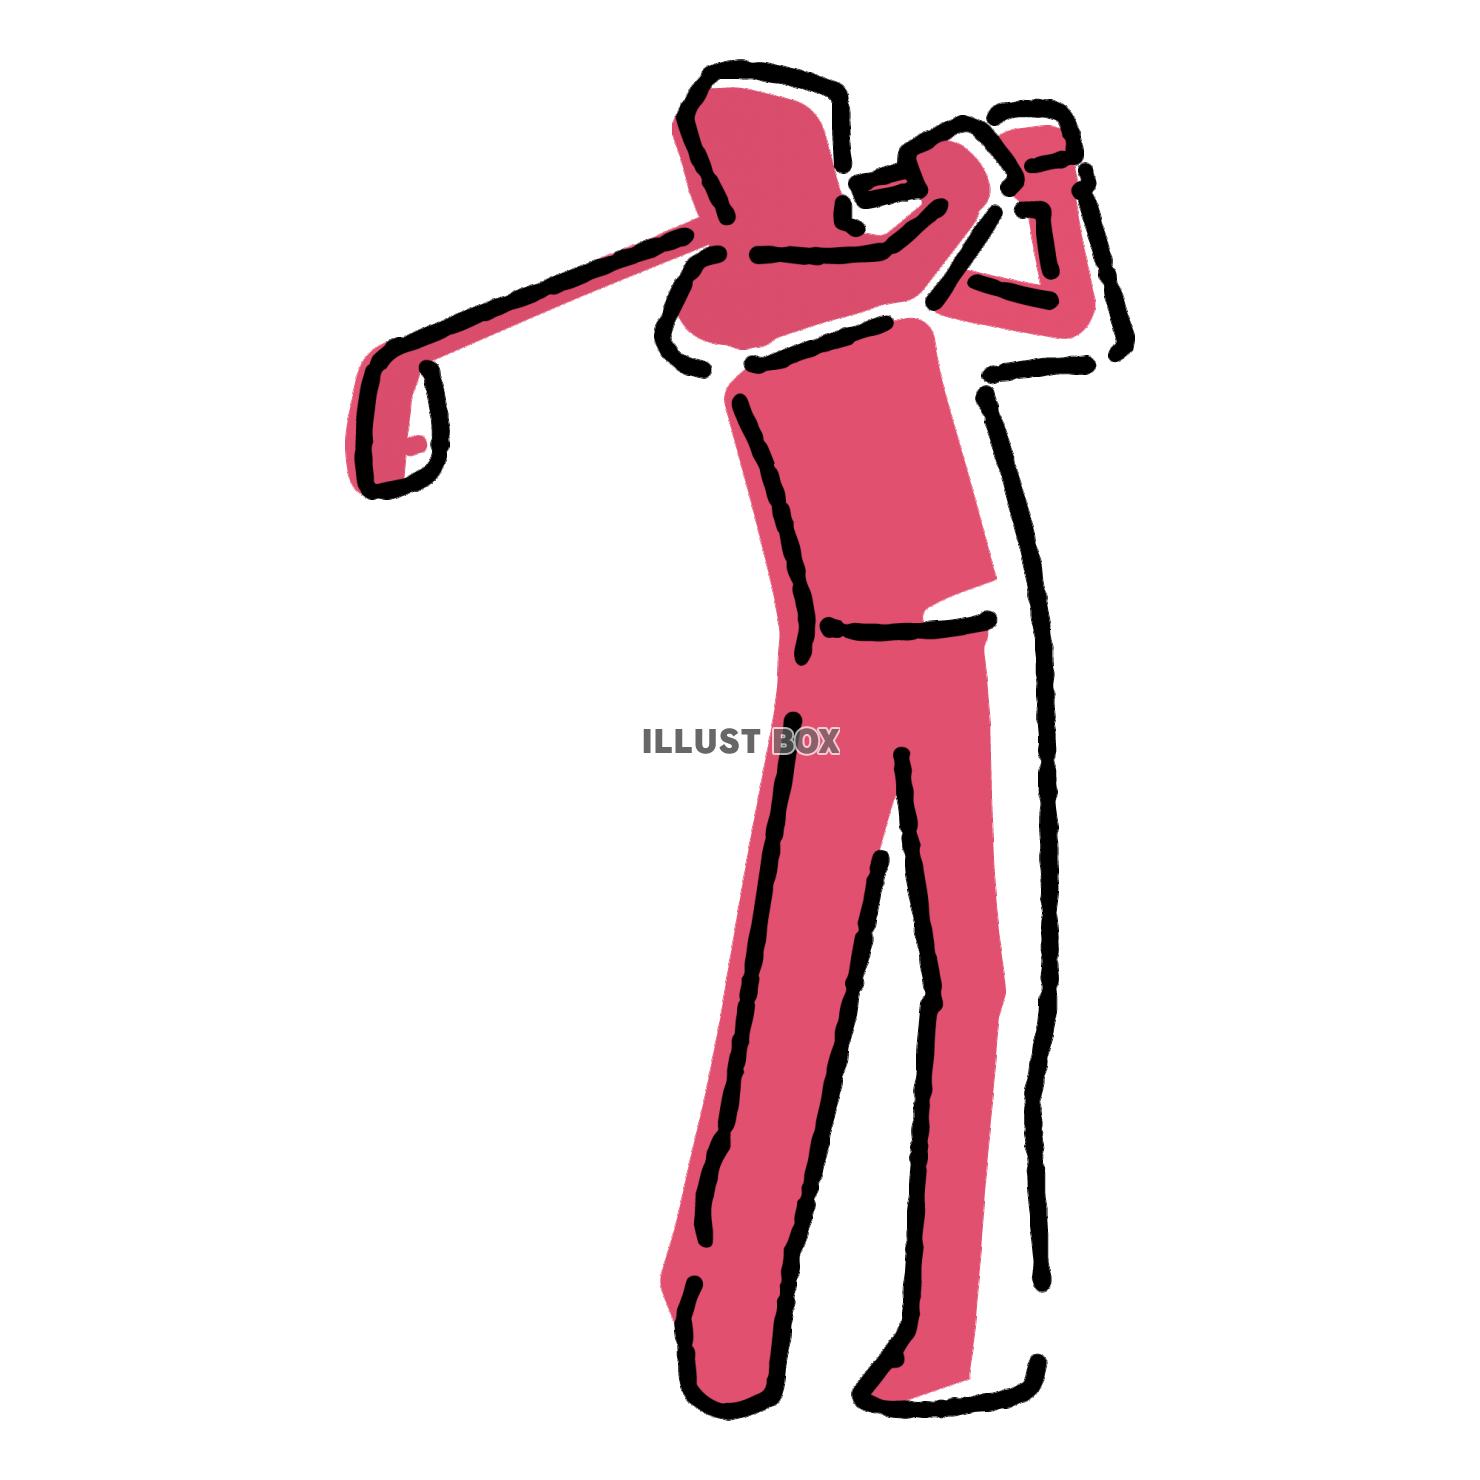 ゴルフをする人物のイラスト